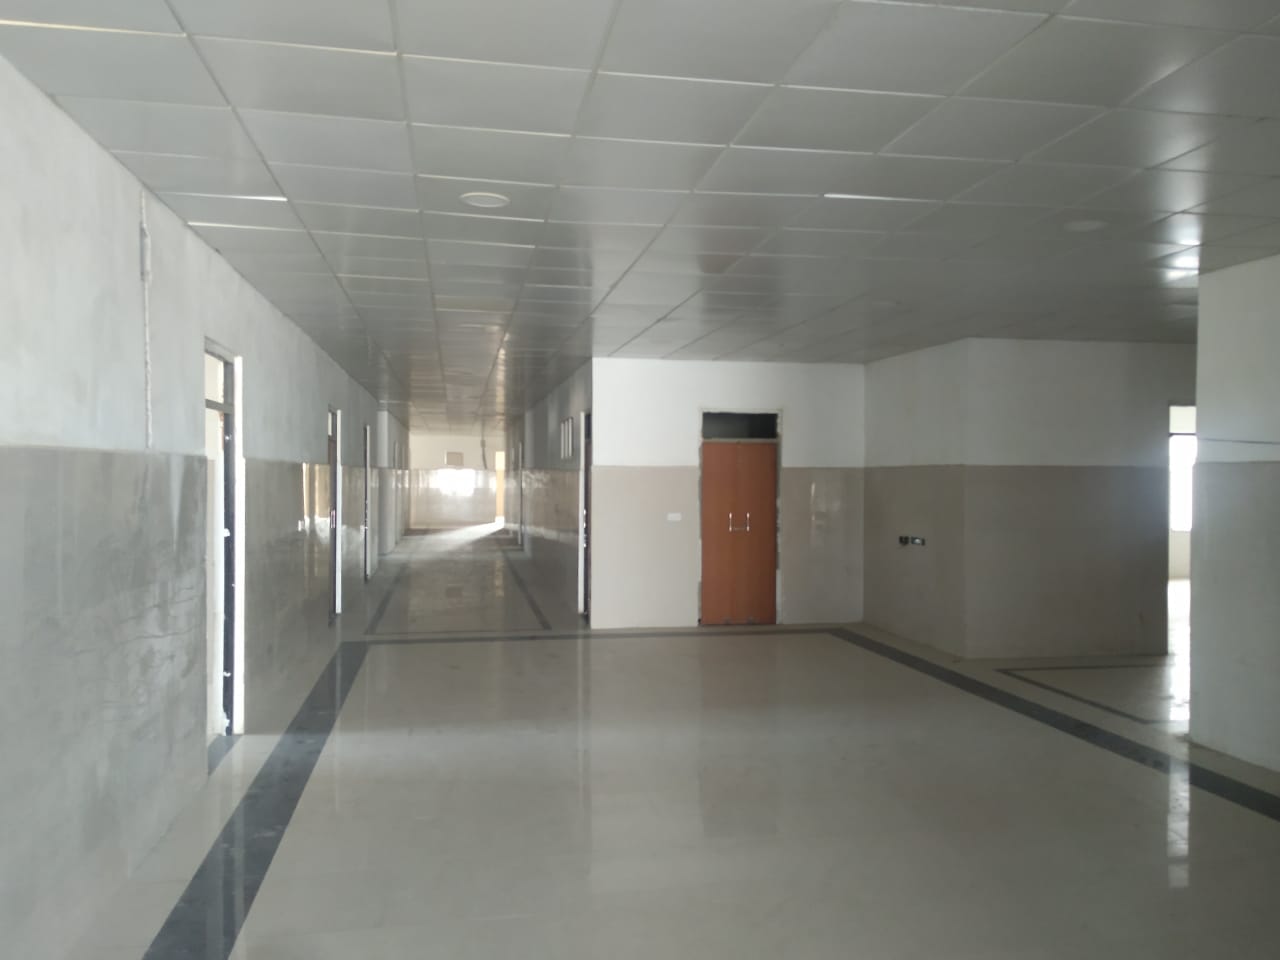 Composite building - 100 Bedded hospital